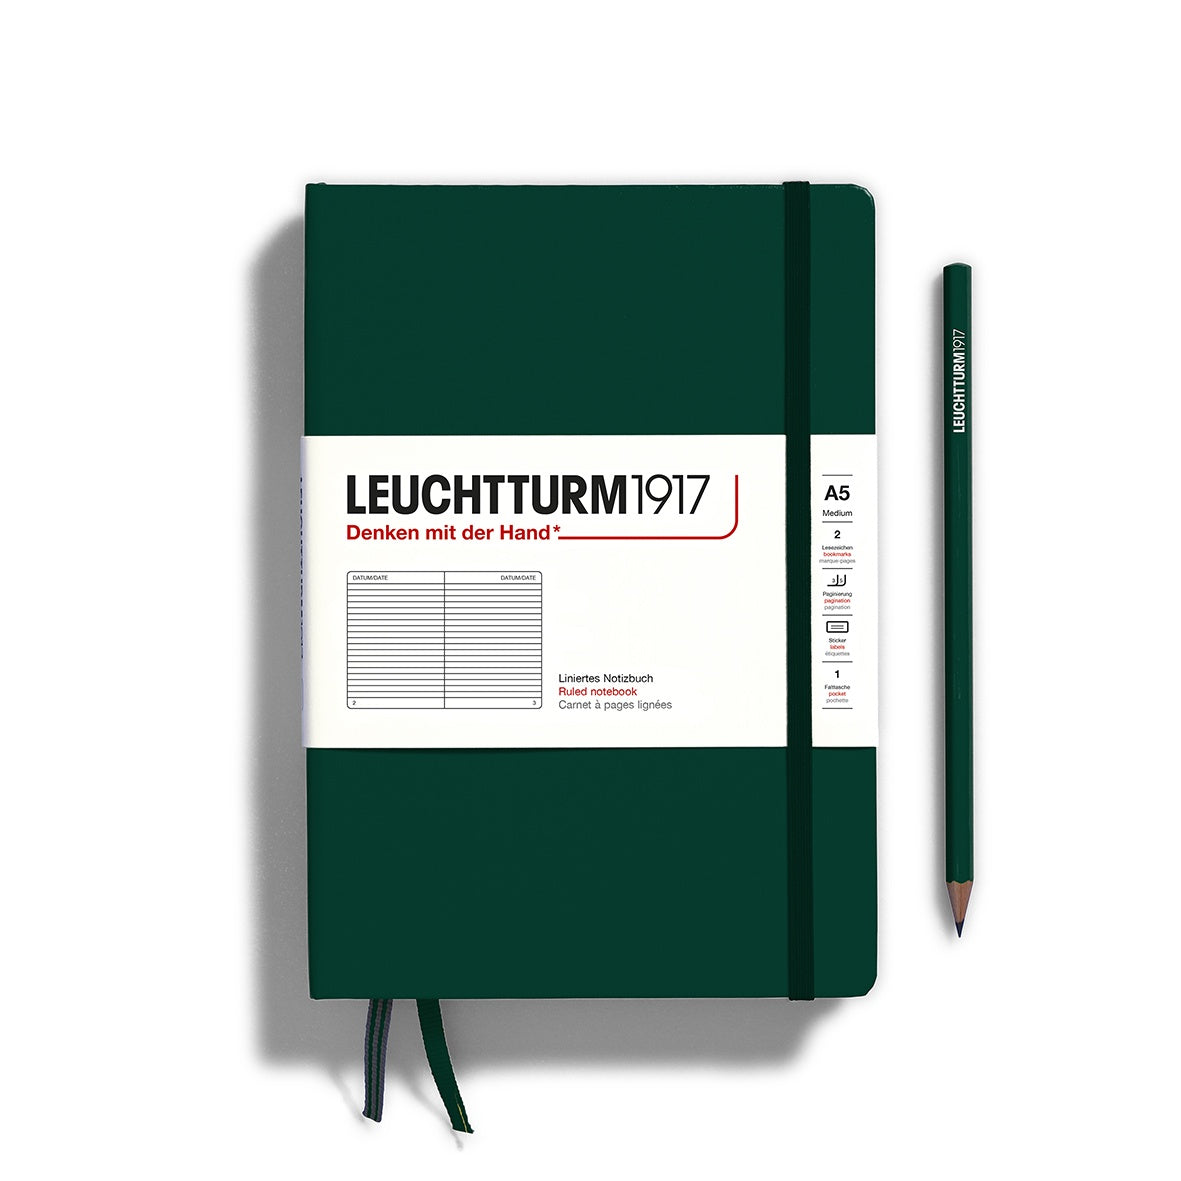 Leuchtturm1917 Notebook Medium (A5) Ruled Forest Green - Pencraft the boutique